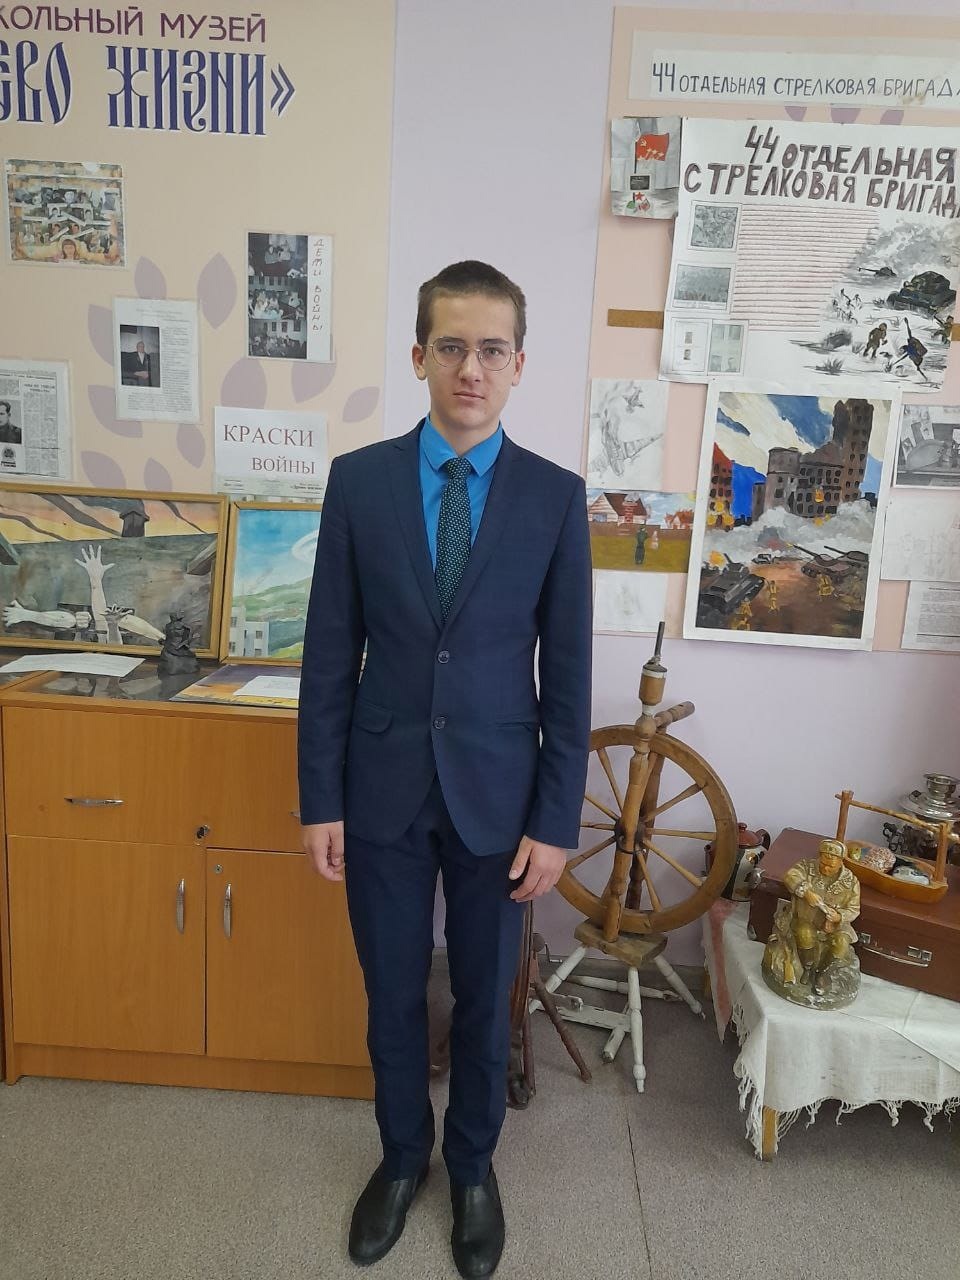 Красноярский школьник стал победителем Всероссийского конкурса школьных музеев